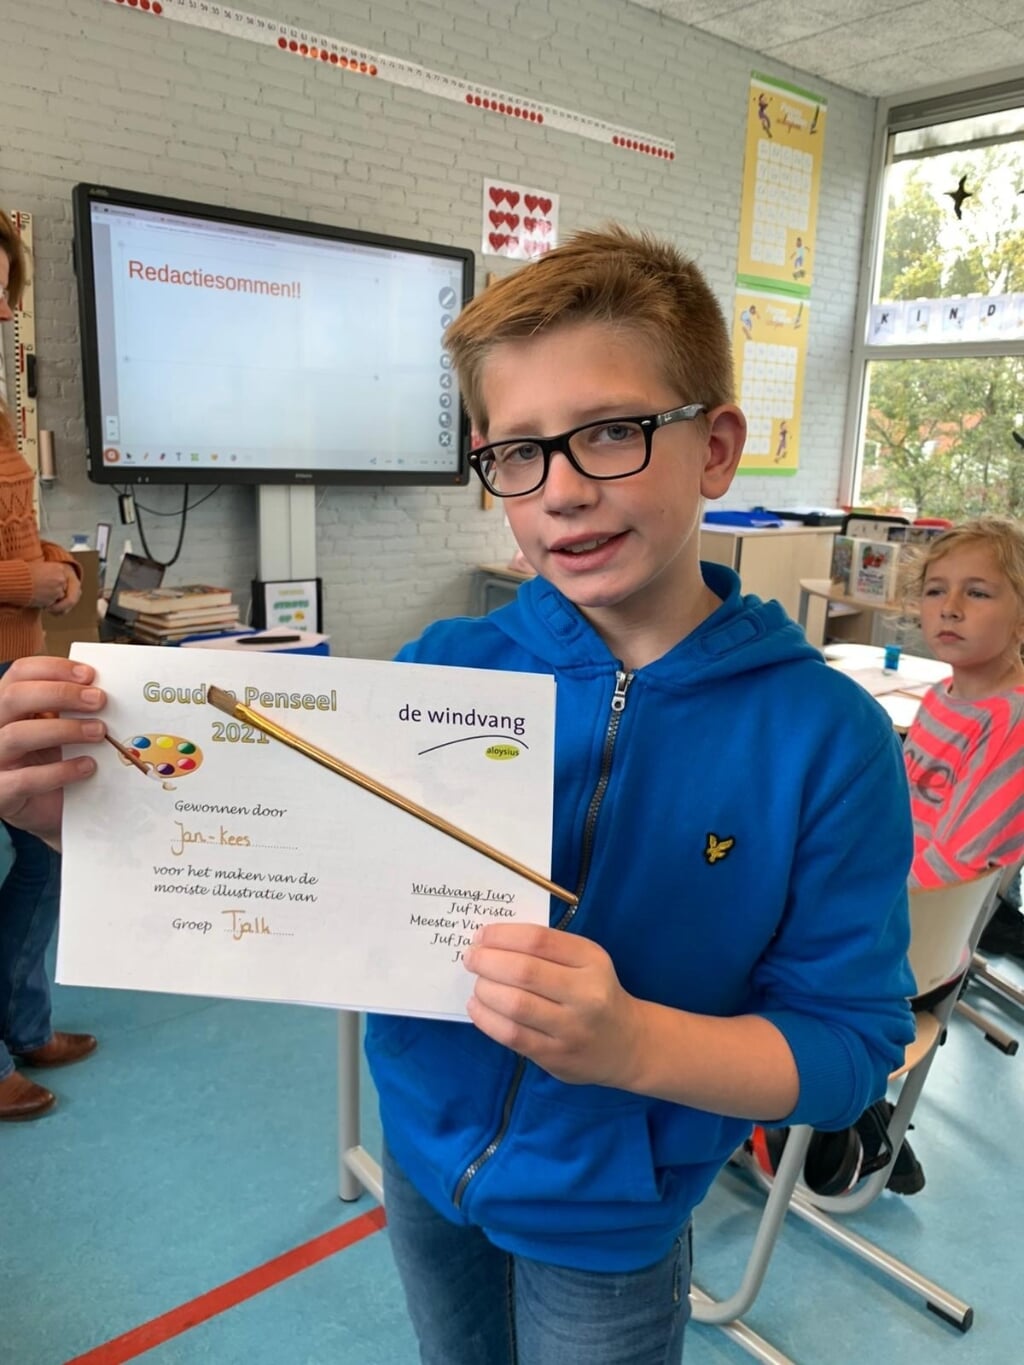 Jan-Kees is een van de prijswinnaars op school van de Gouden griffel. | Foto: pr